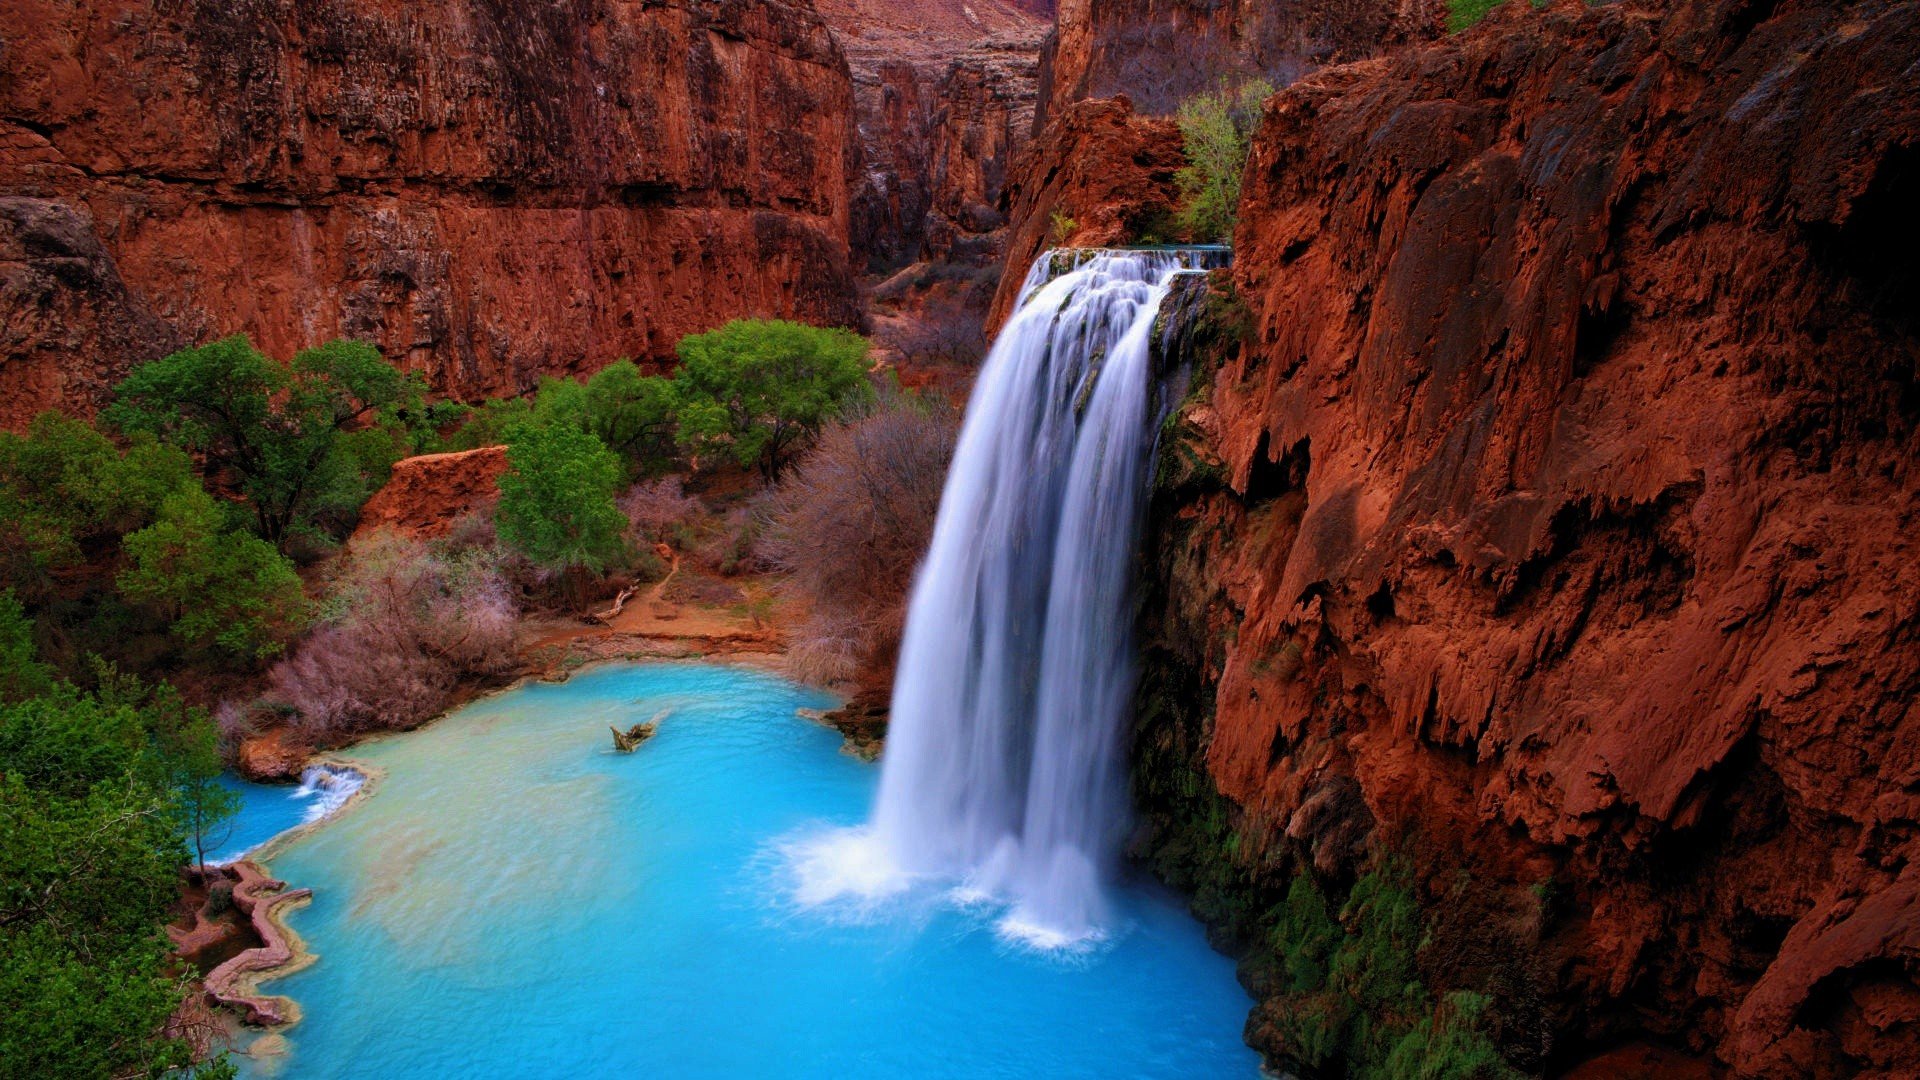 Картинка с водопадом со скалы в голубую воду в каньоне